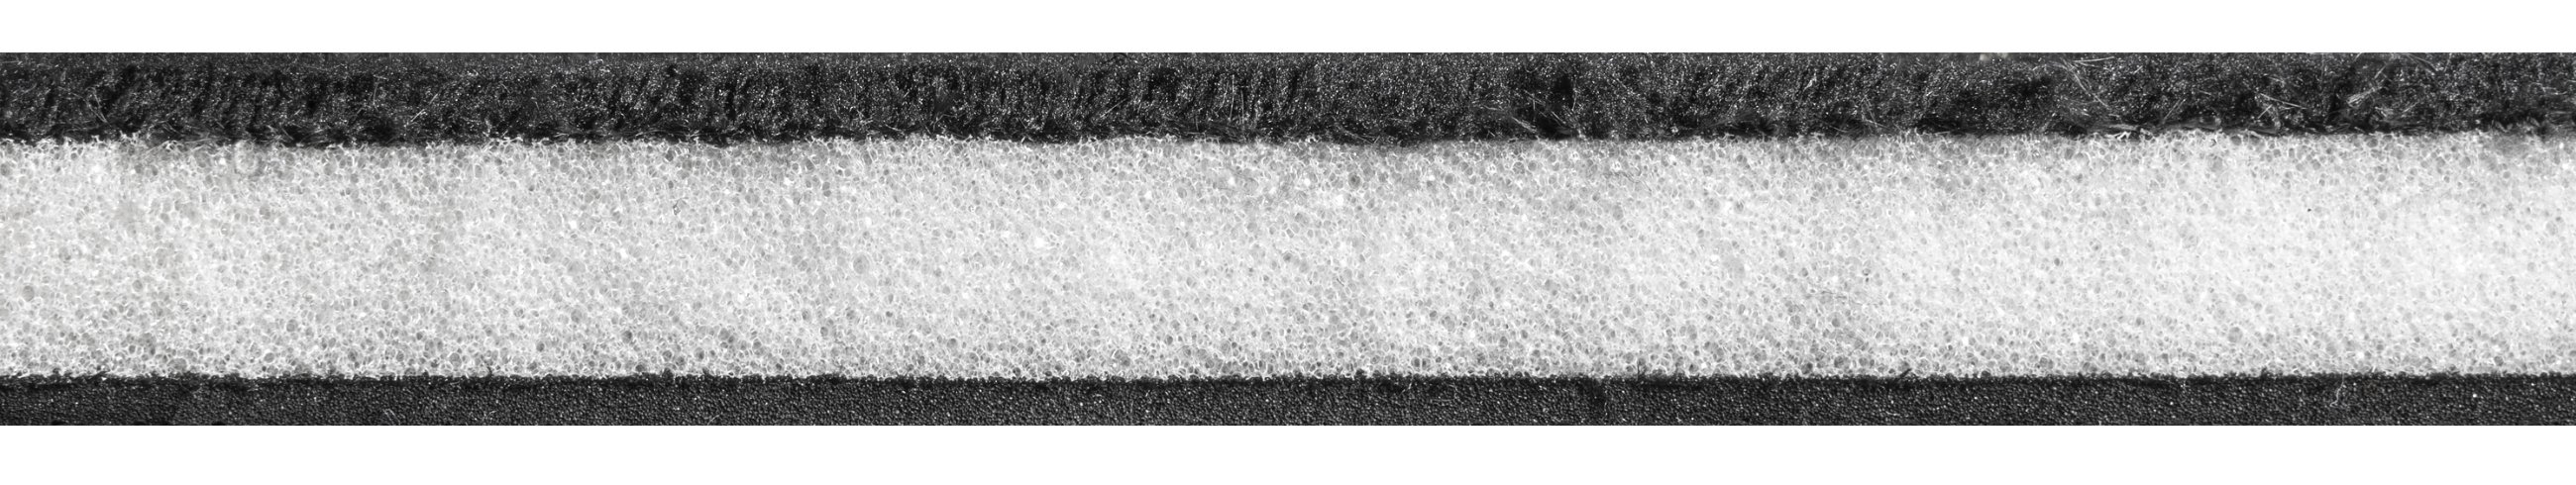 Autoteppich Washer 8mm Velours 4tlg. schwarz